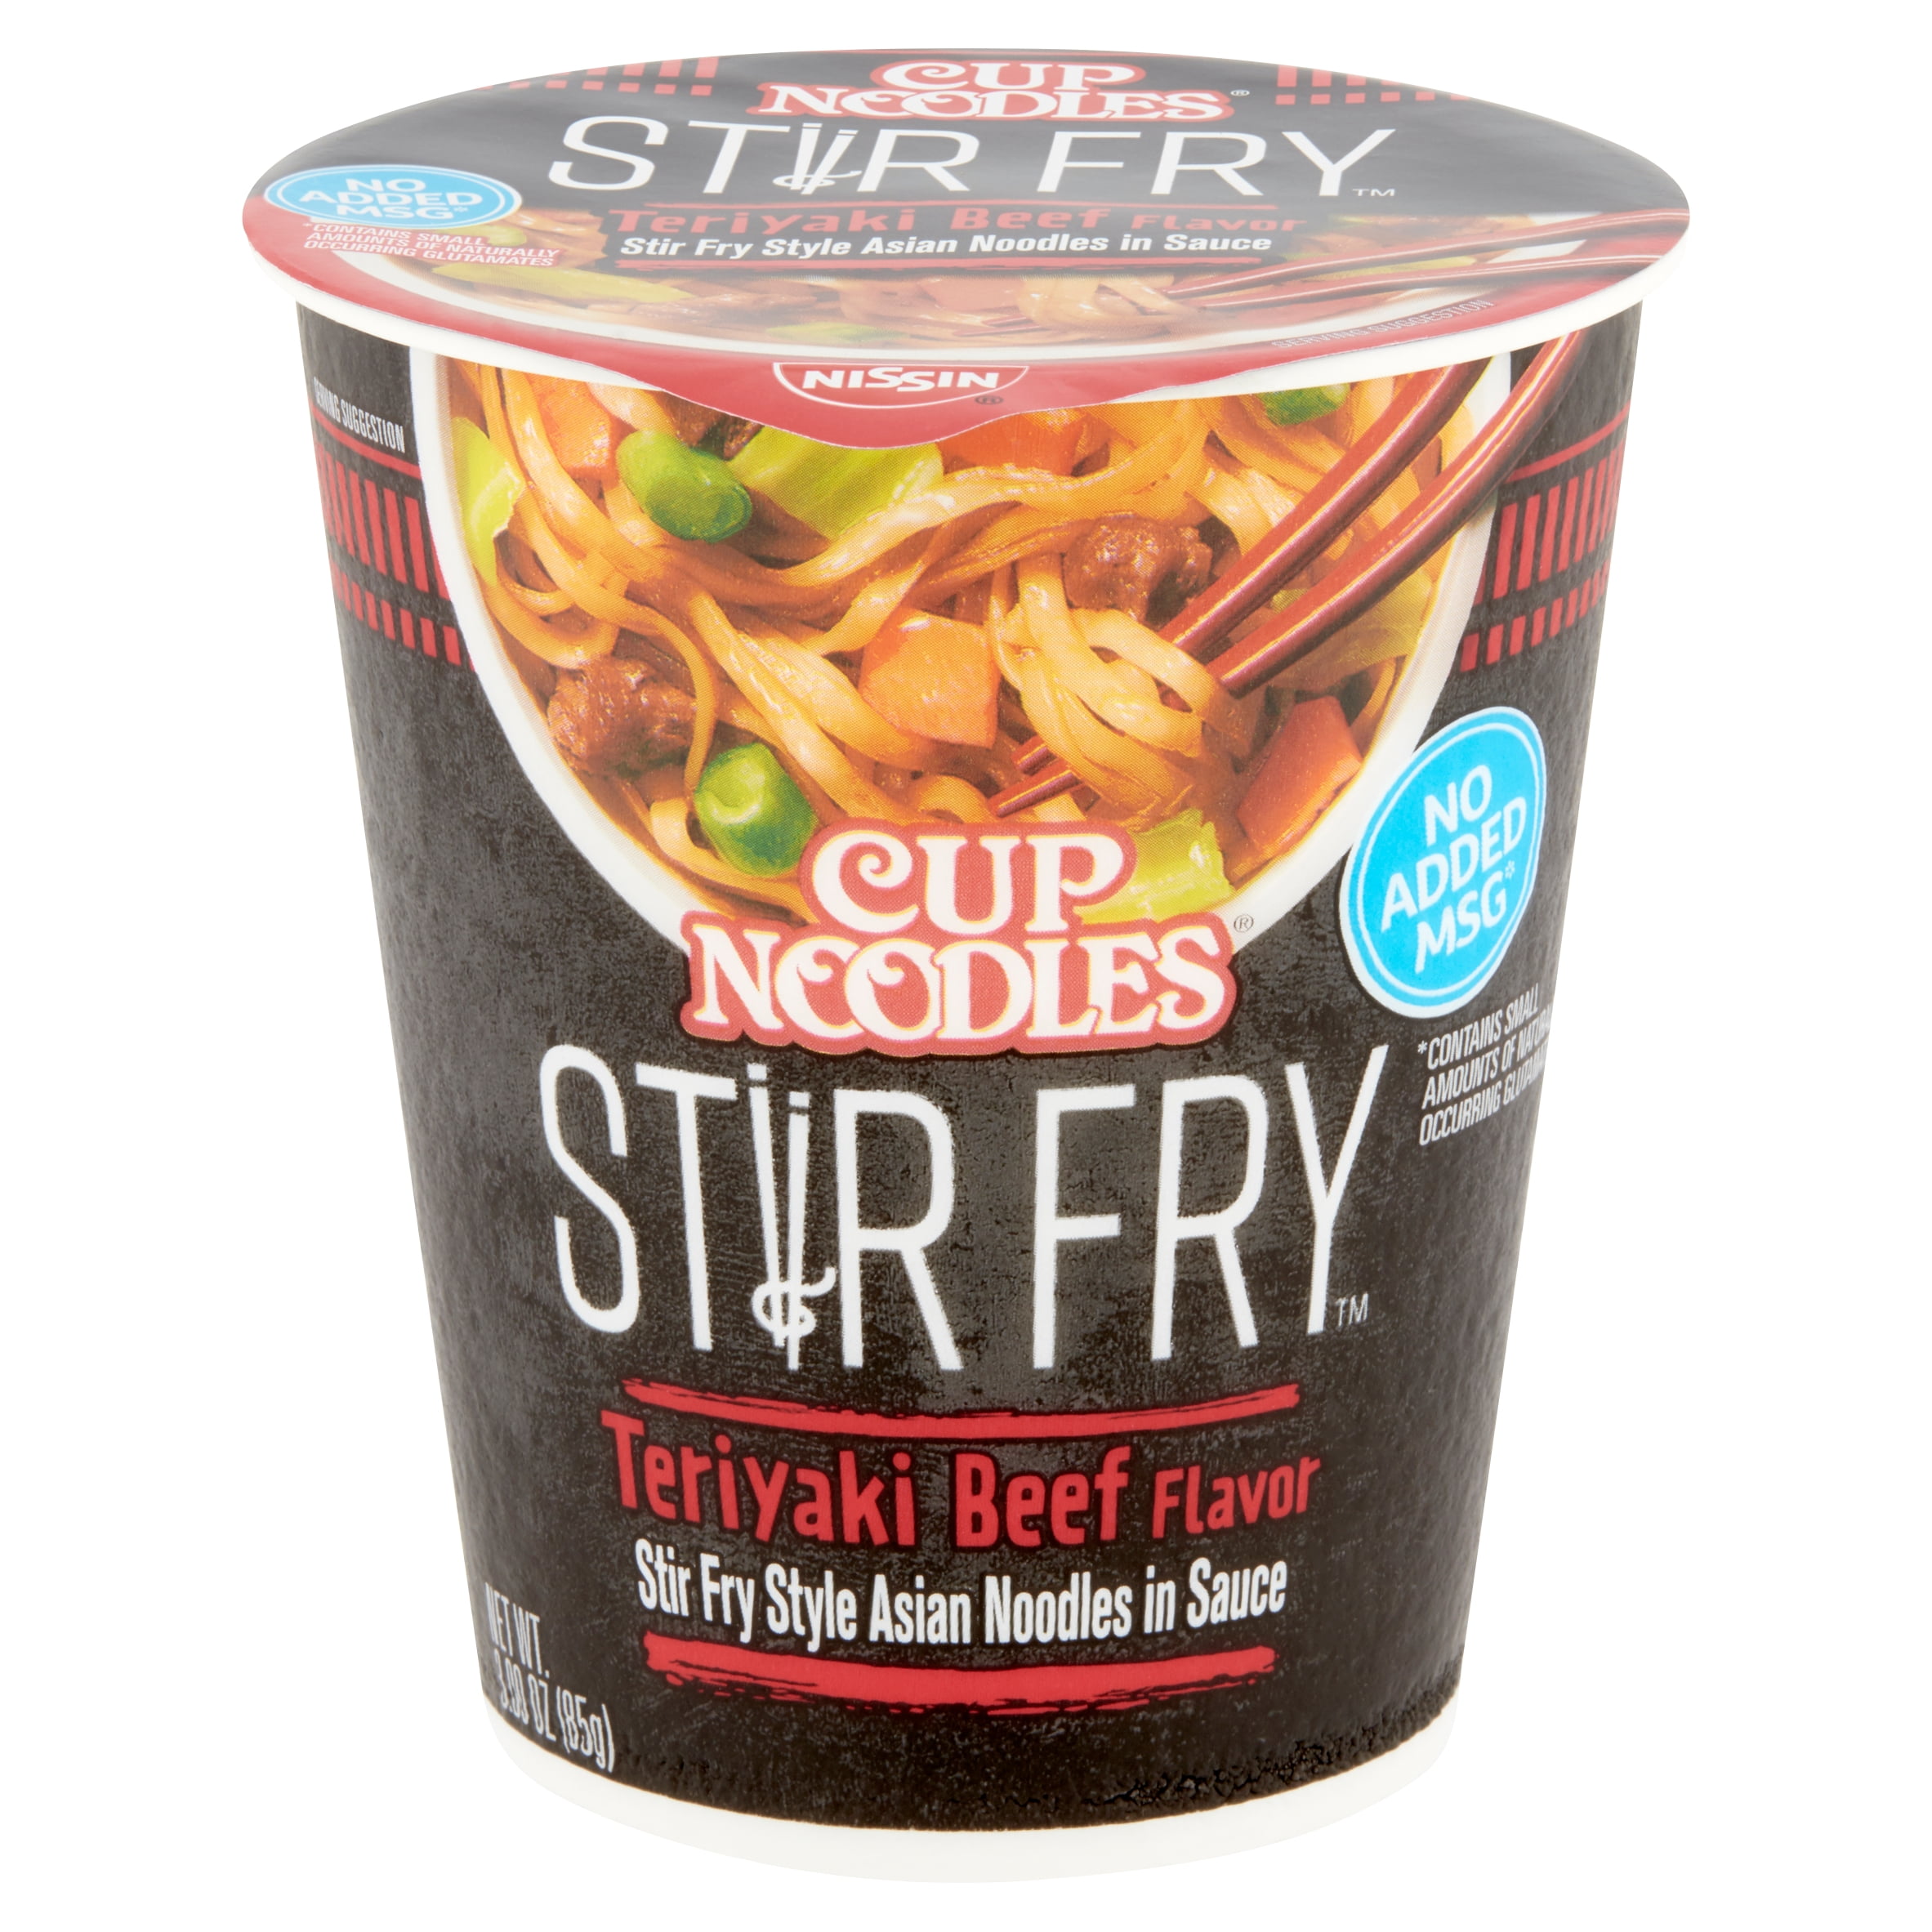 Nissin Cup Noodles Stir Fry Teriyaki Beef Flavor Noodles, 3.00 oz